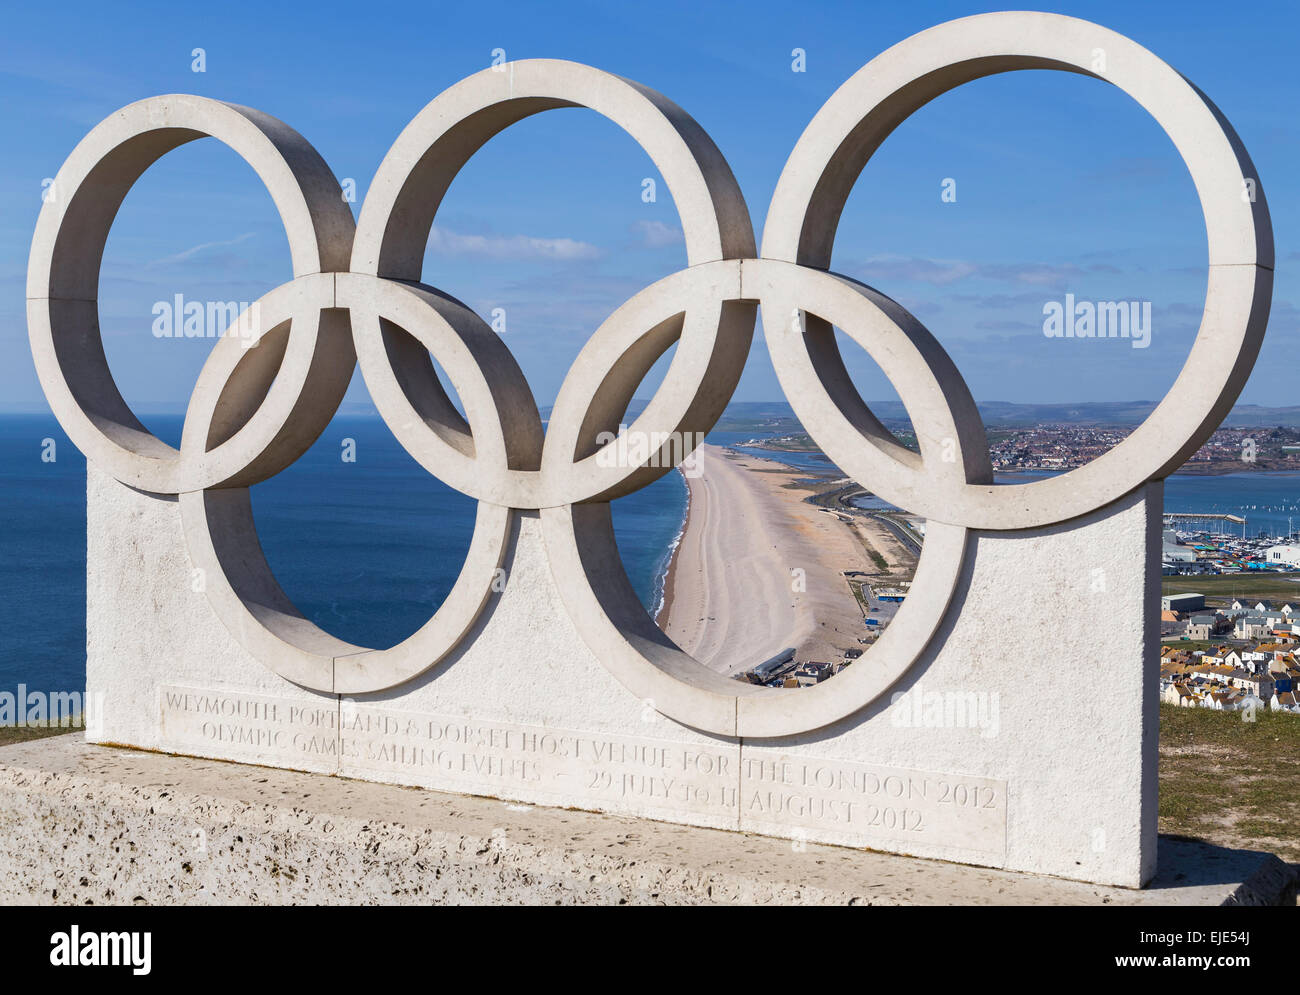 Un monumento di anelli olimpici a Weymouth e Portland per commemorare il sport a vela nell'estate del 2012. Foto Stock